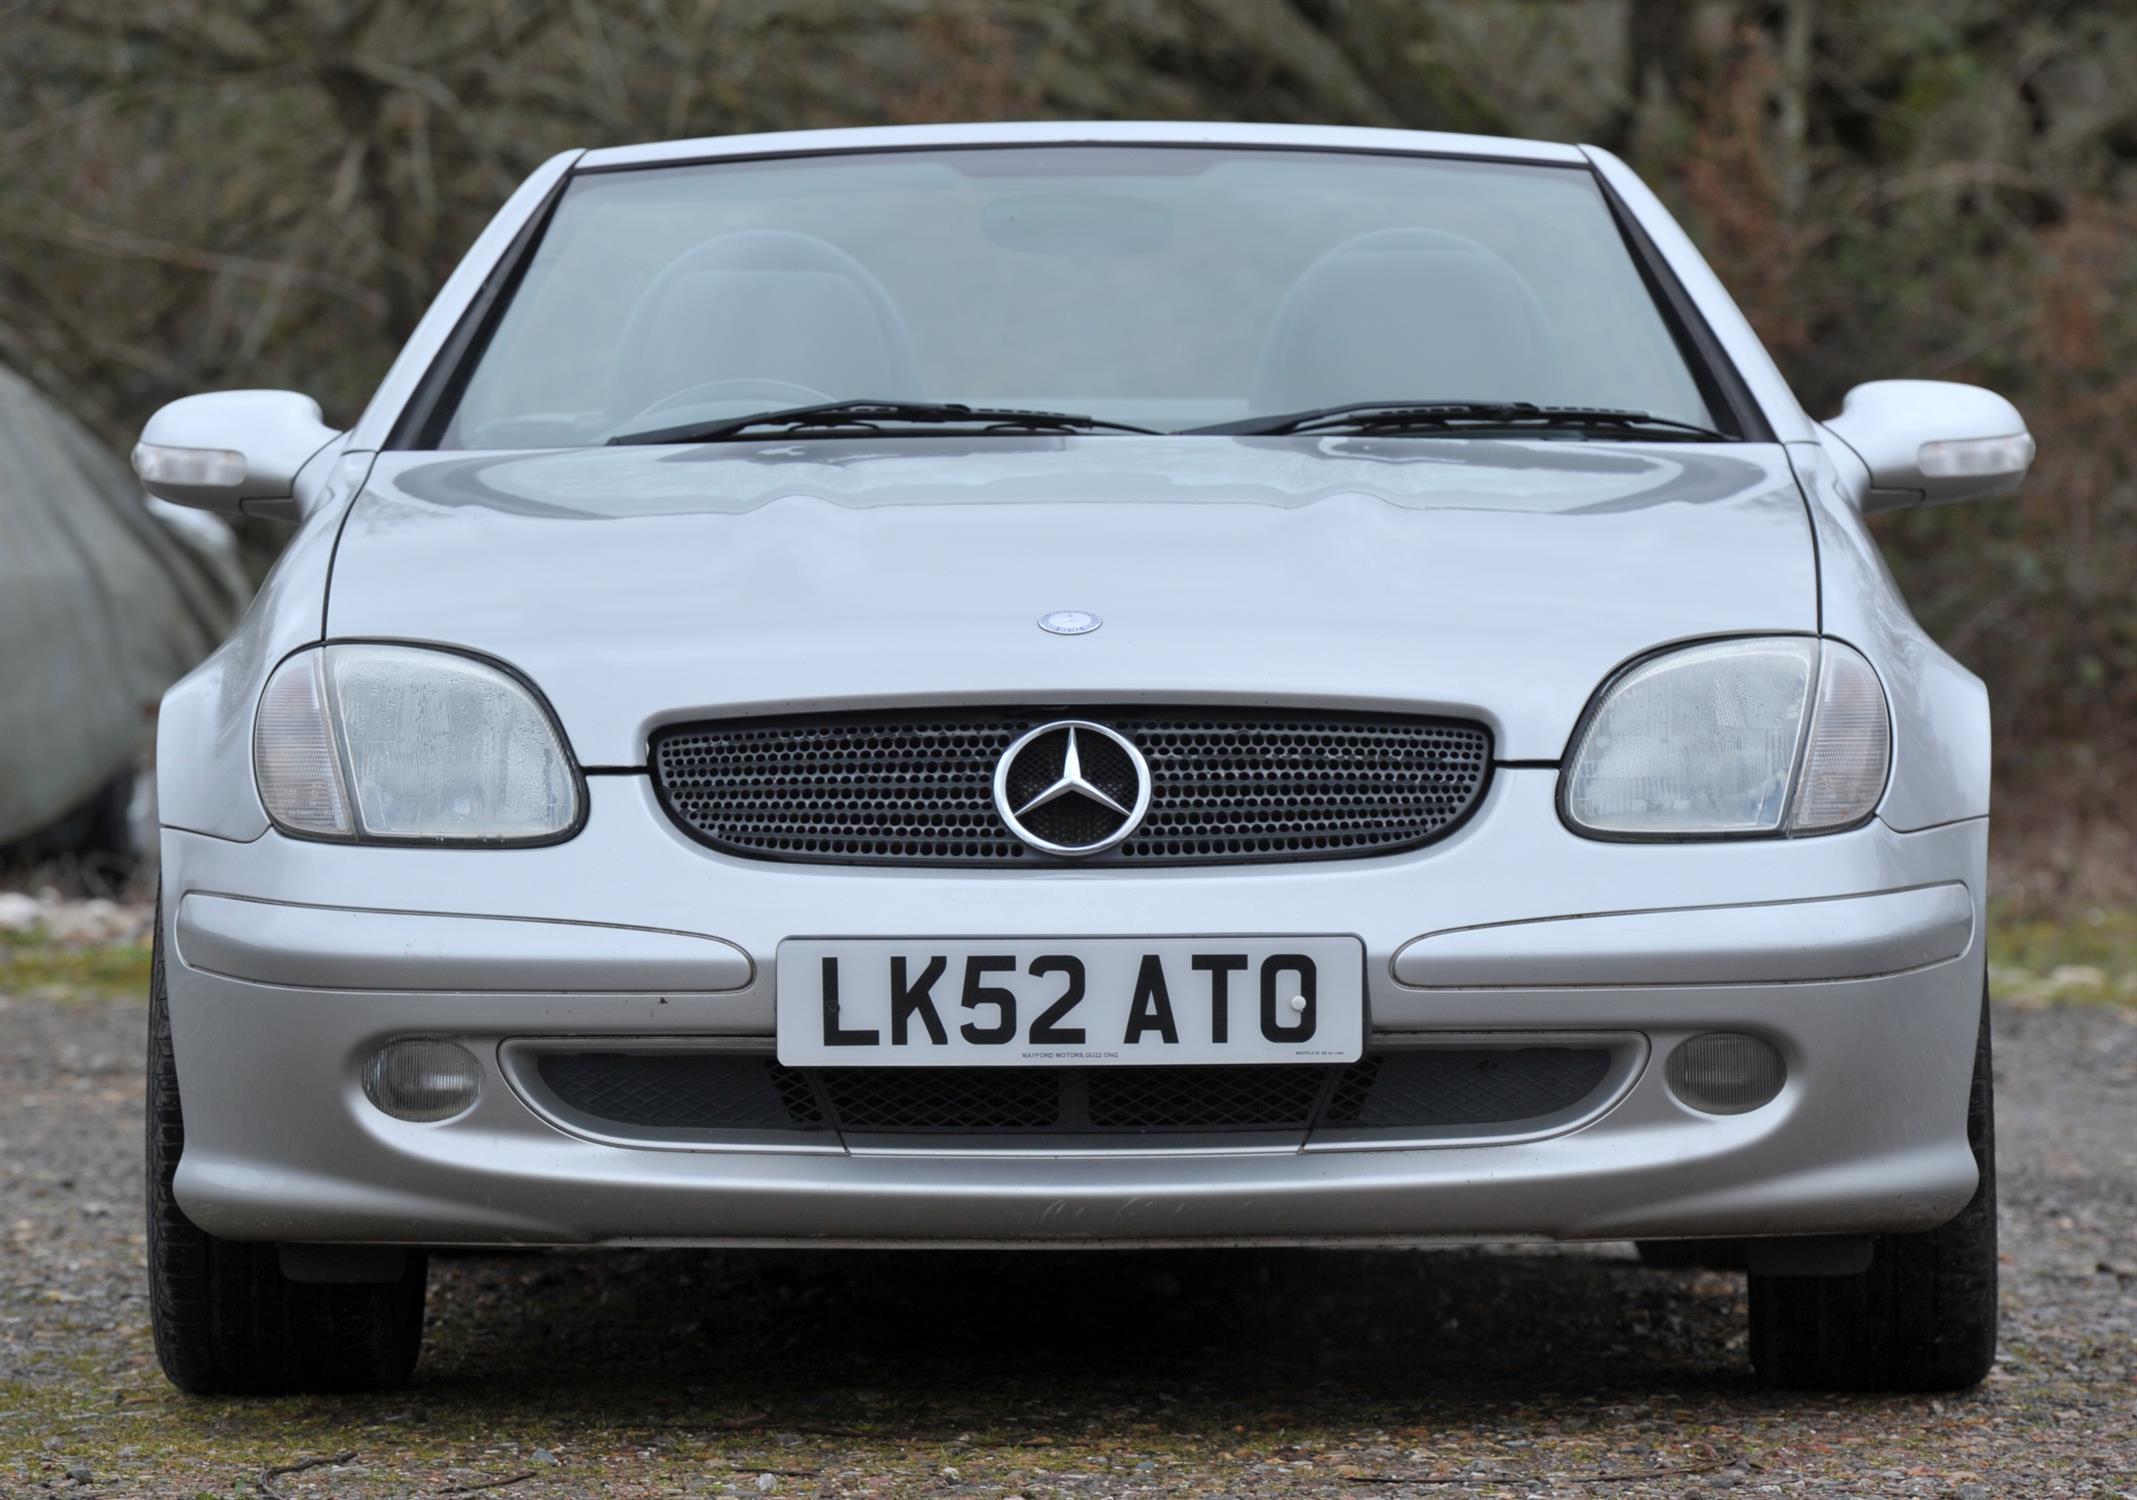 2002 Mercedes Benz SLK200 Special Edition Kompressor. Registration number: LK52 ATO. - Image 2 of 15